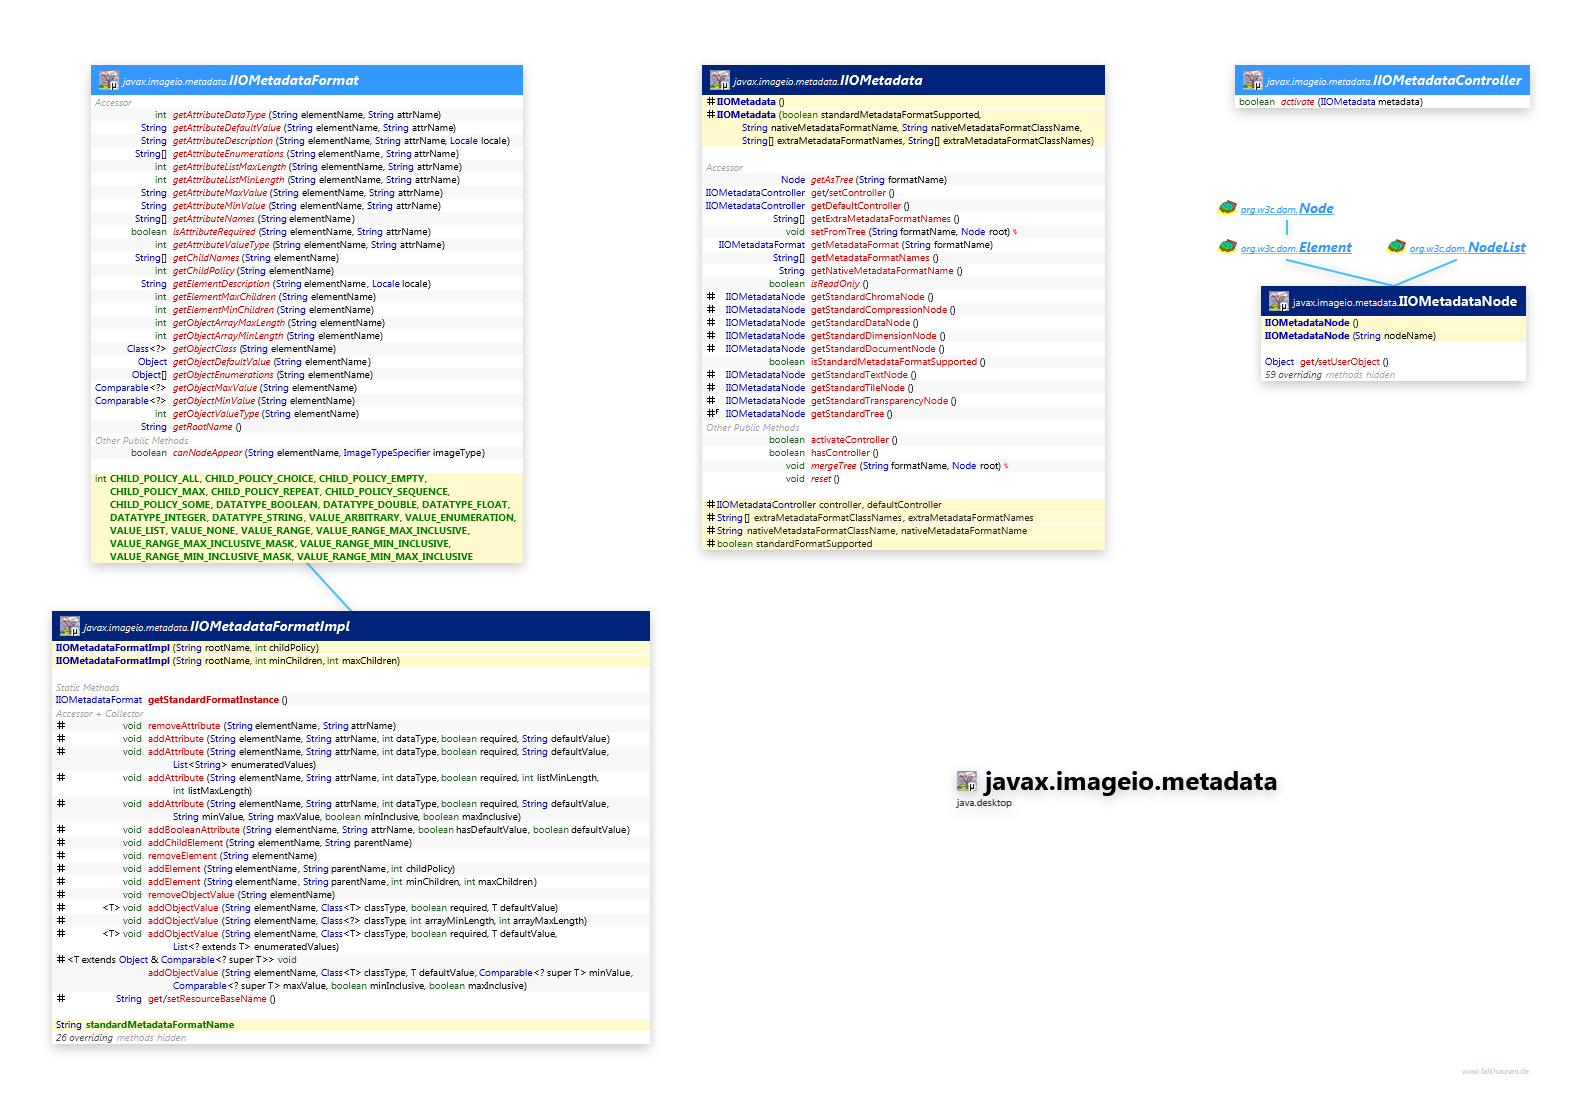 javax.imageio.metadata class diagram and api documentation for Java 10